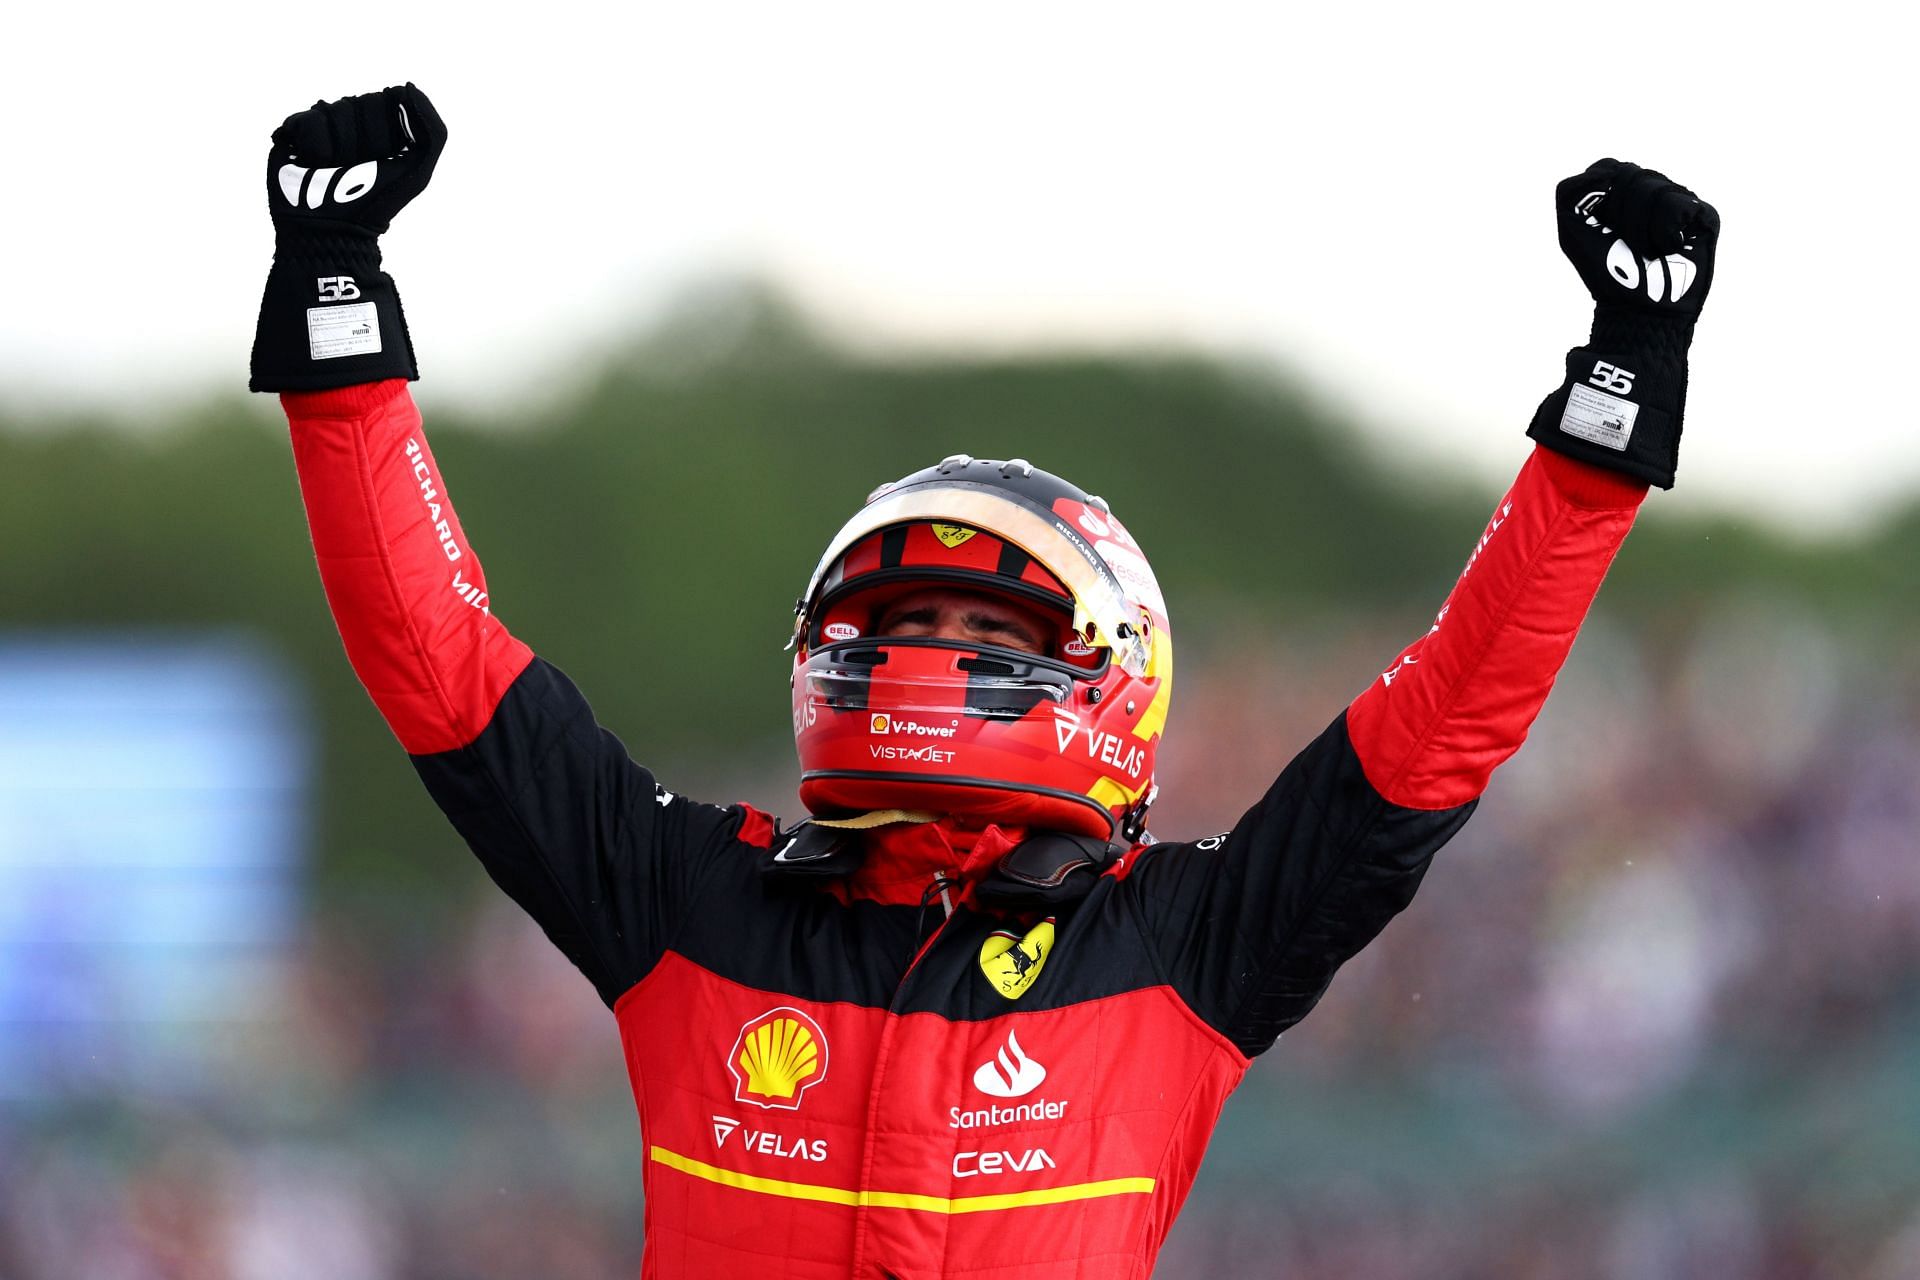 F1 Grand Prix of Great Britain - Carlos Sainz wins in Britain.